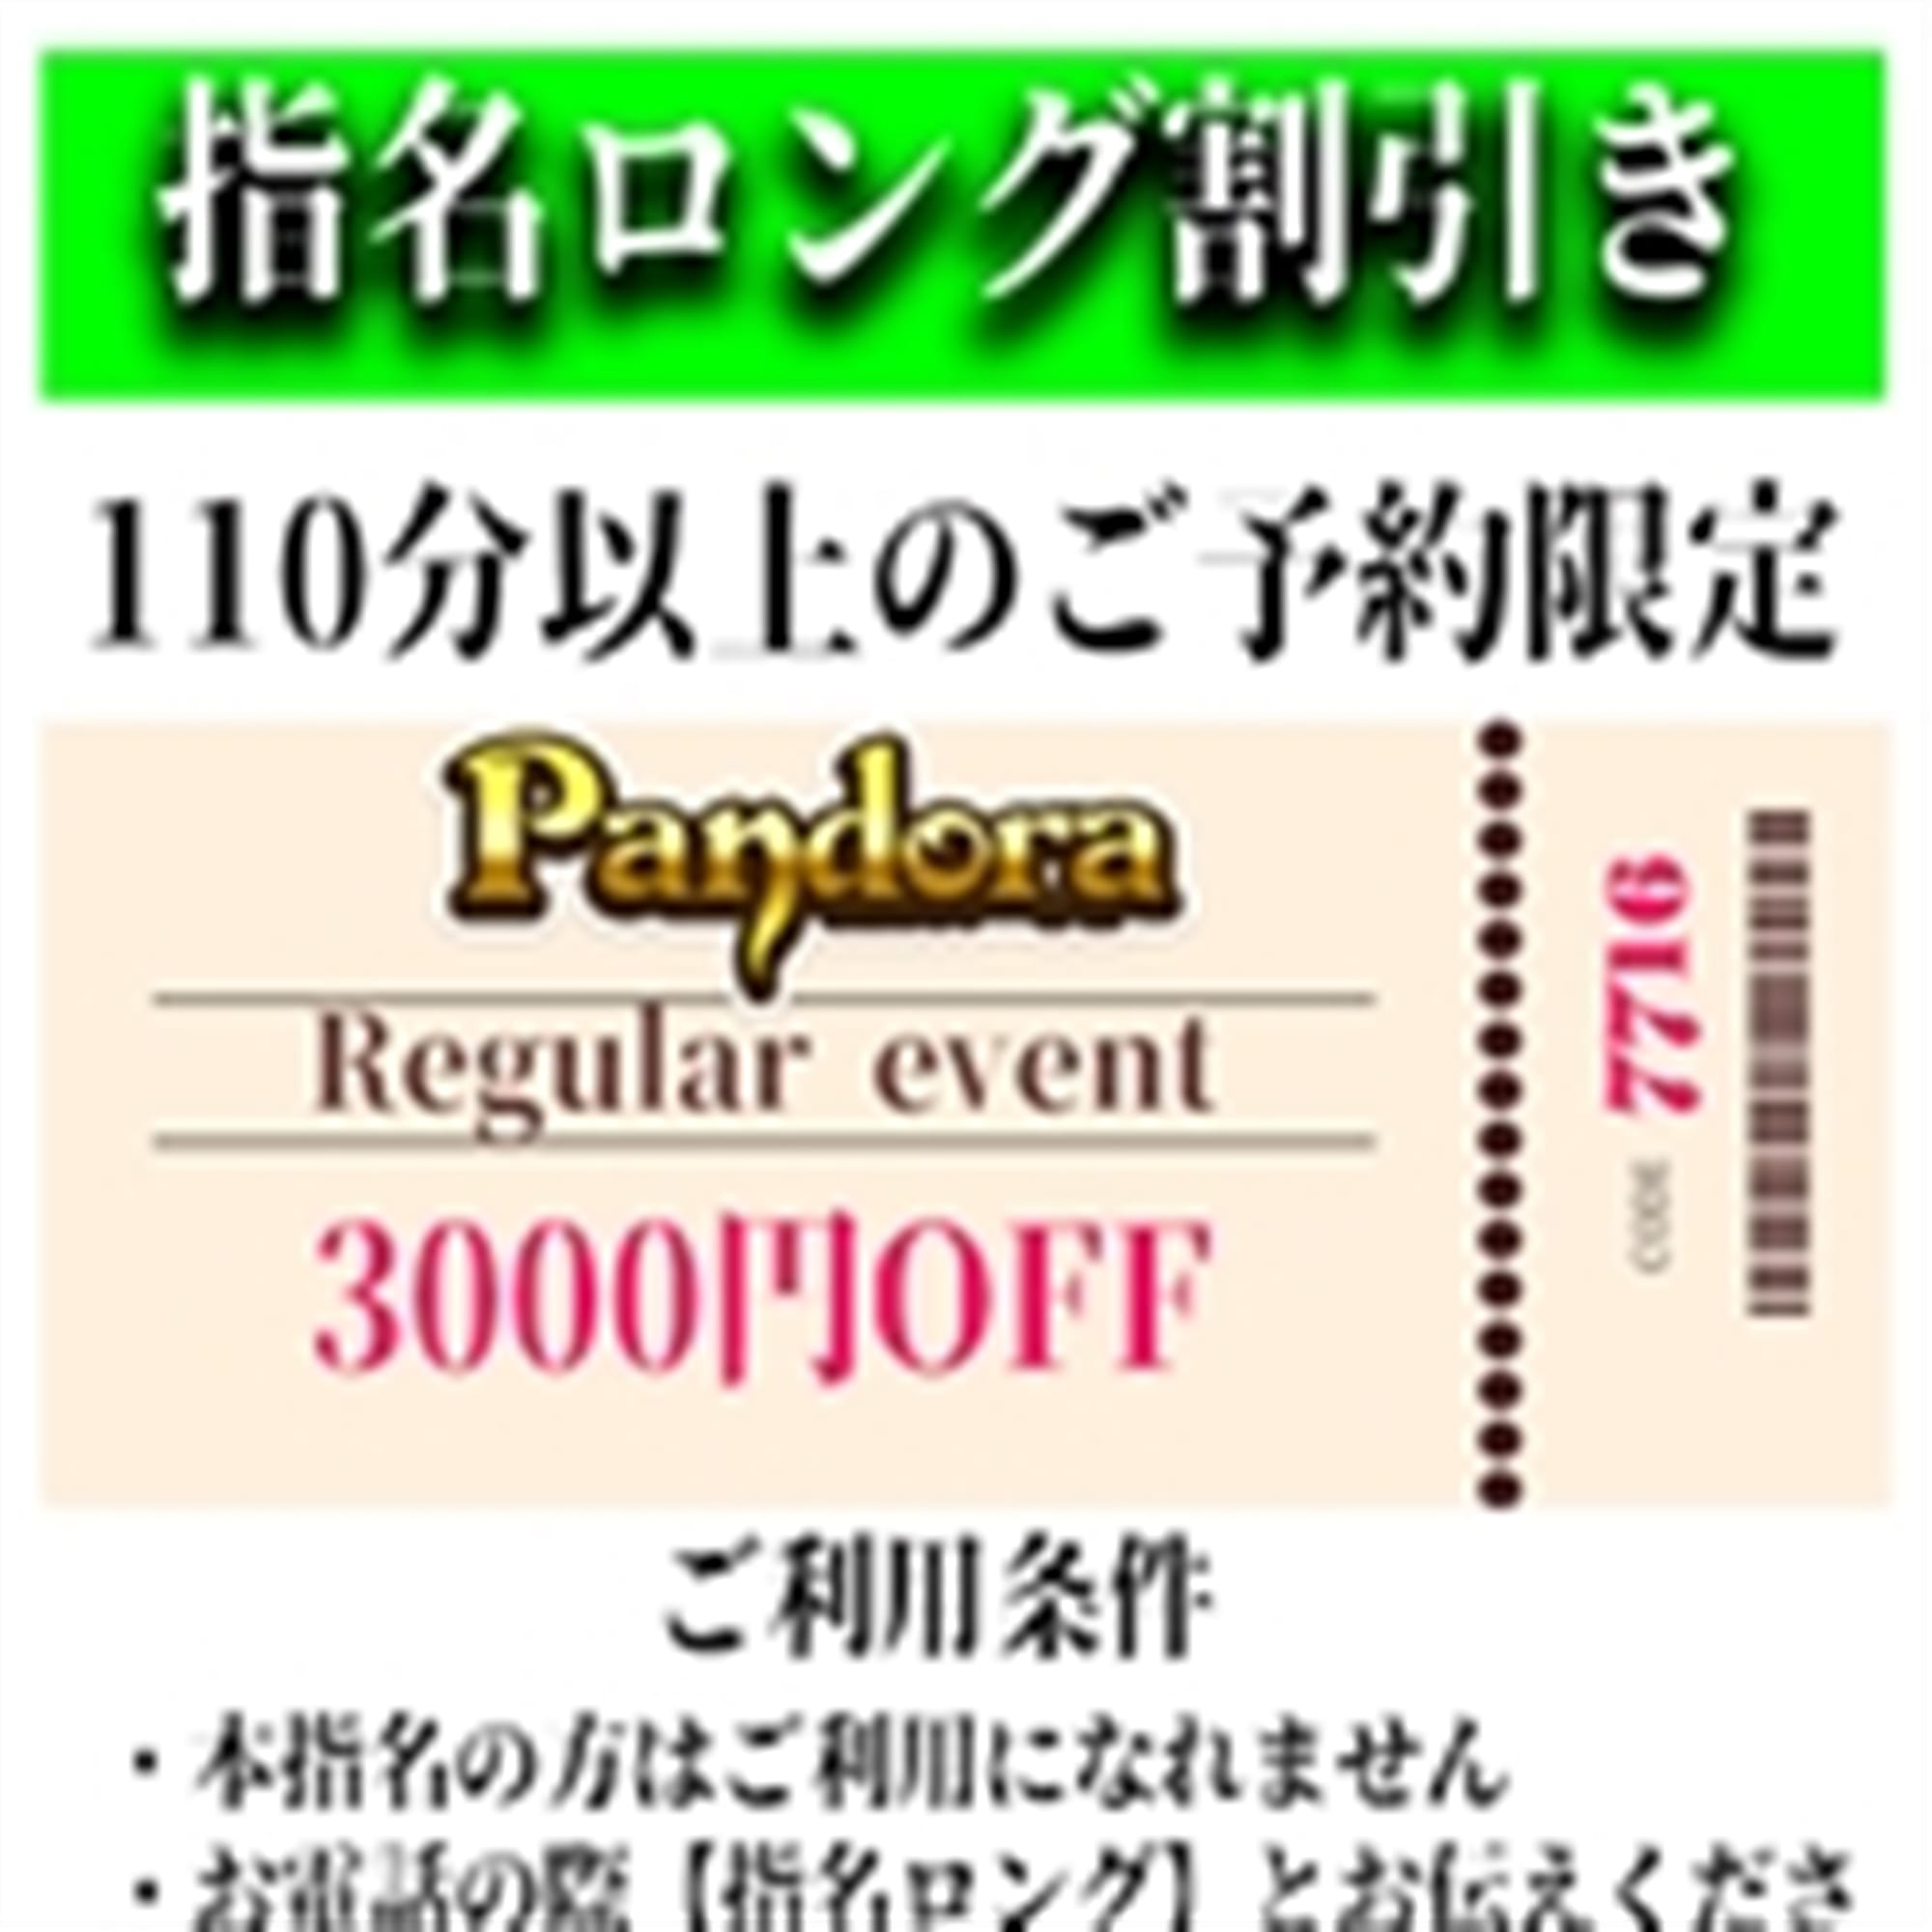 「ご指名のお客様も遊べるロングコース割引」04/27(土) 00:25 | Pandora(パンドラ)新潟のお得なニュース